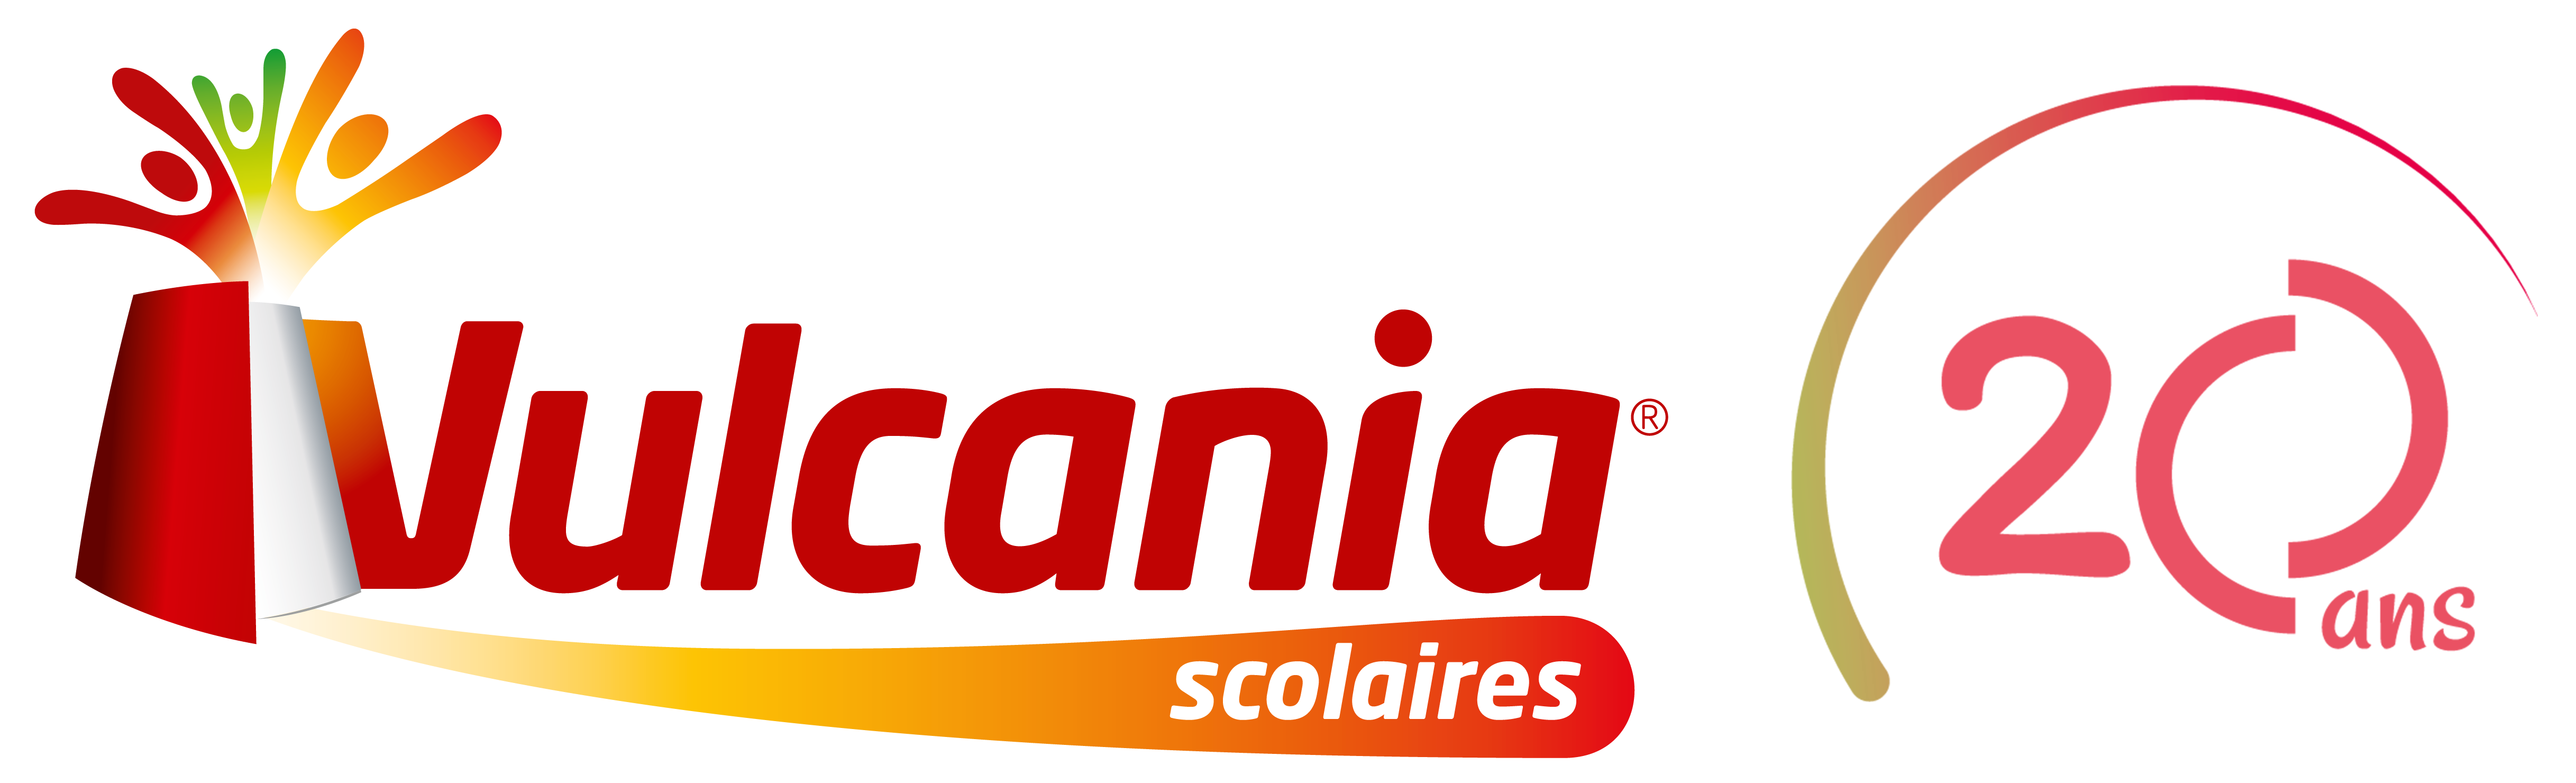 Vulcania Scolaires